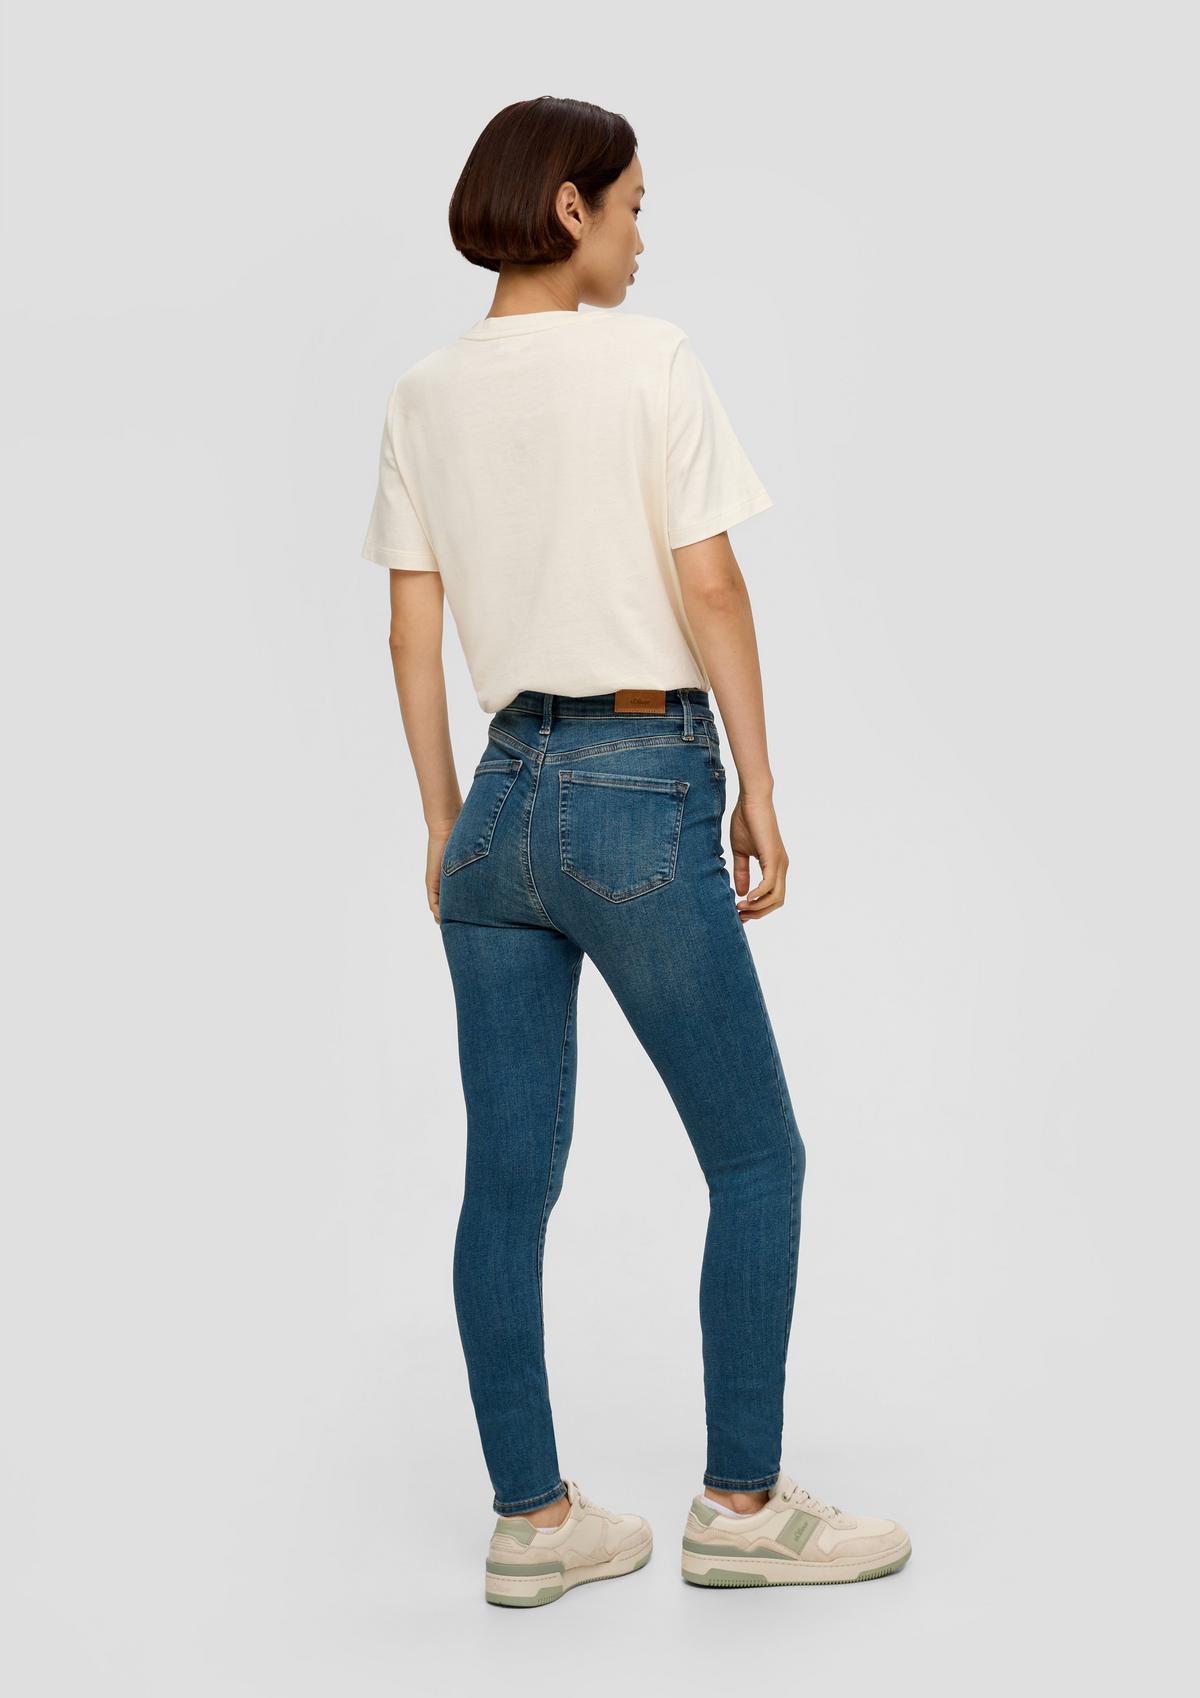 s.Oliver Super Skinny: ozke jeans hlače s strečem